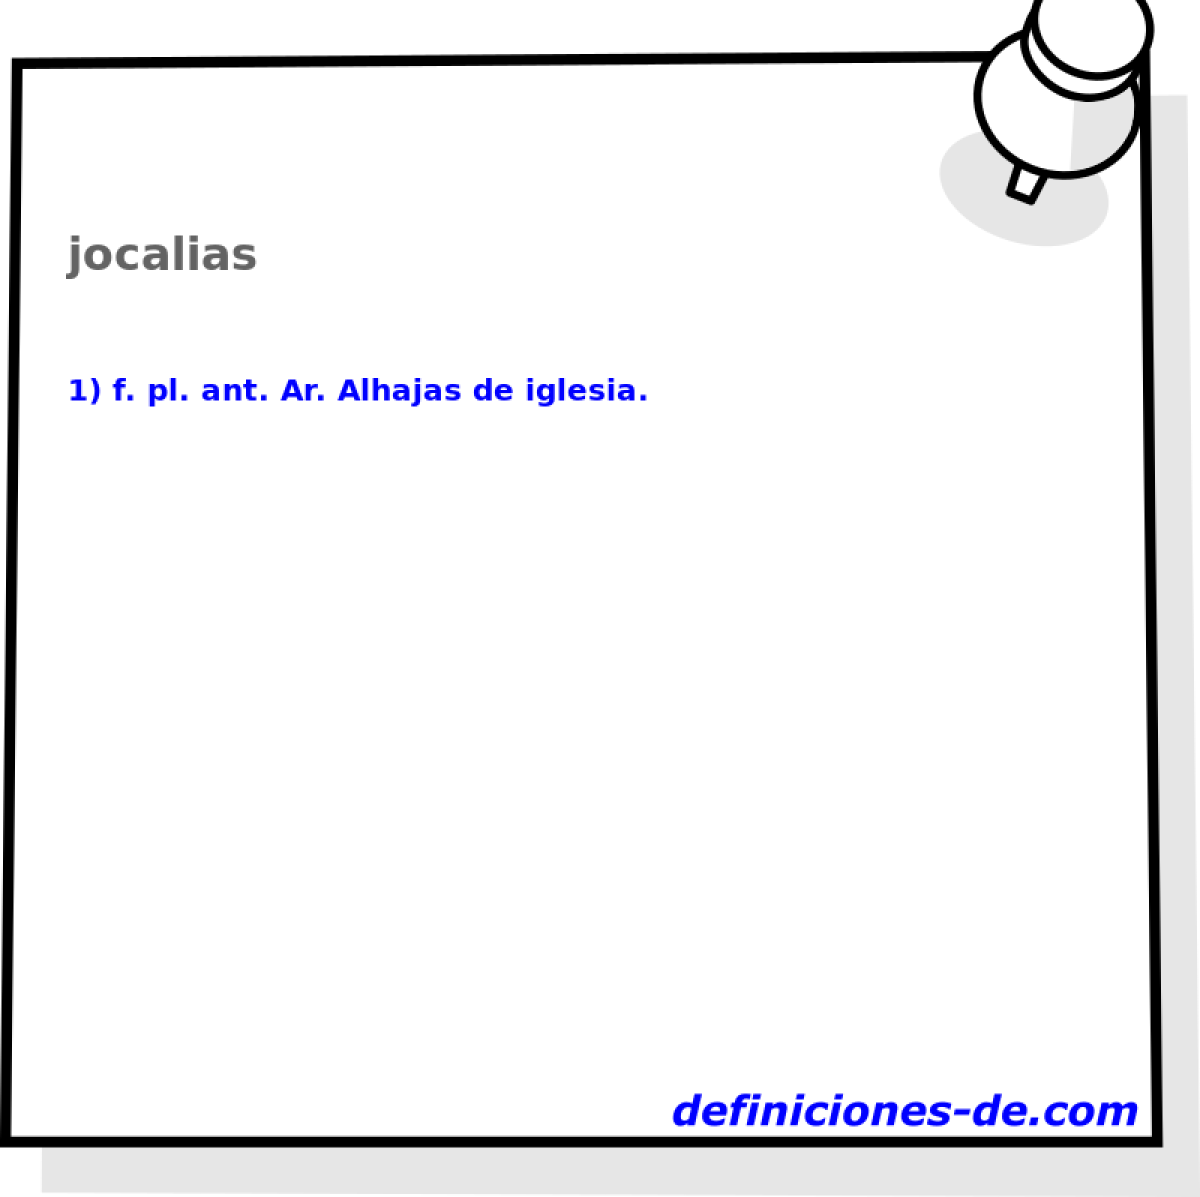 jocalias 